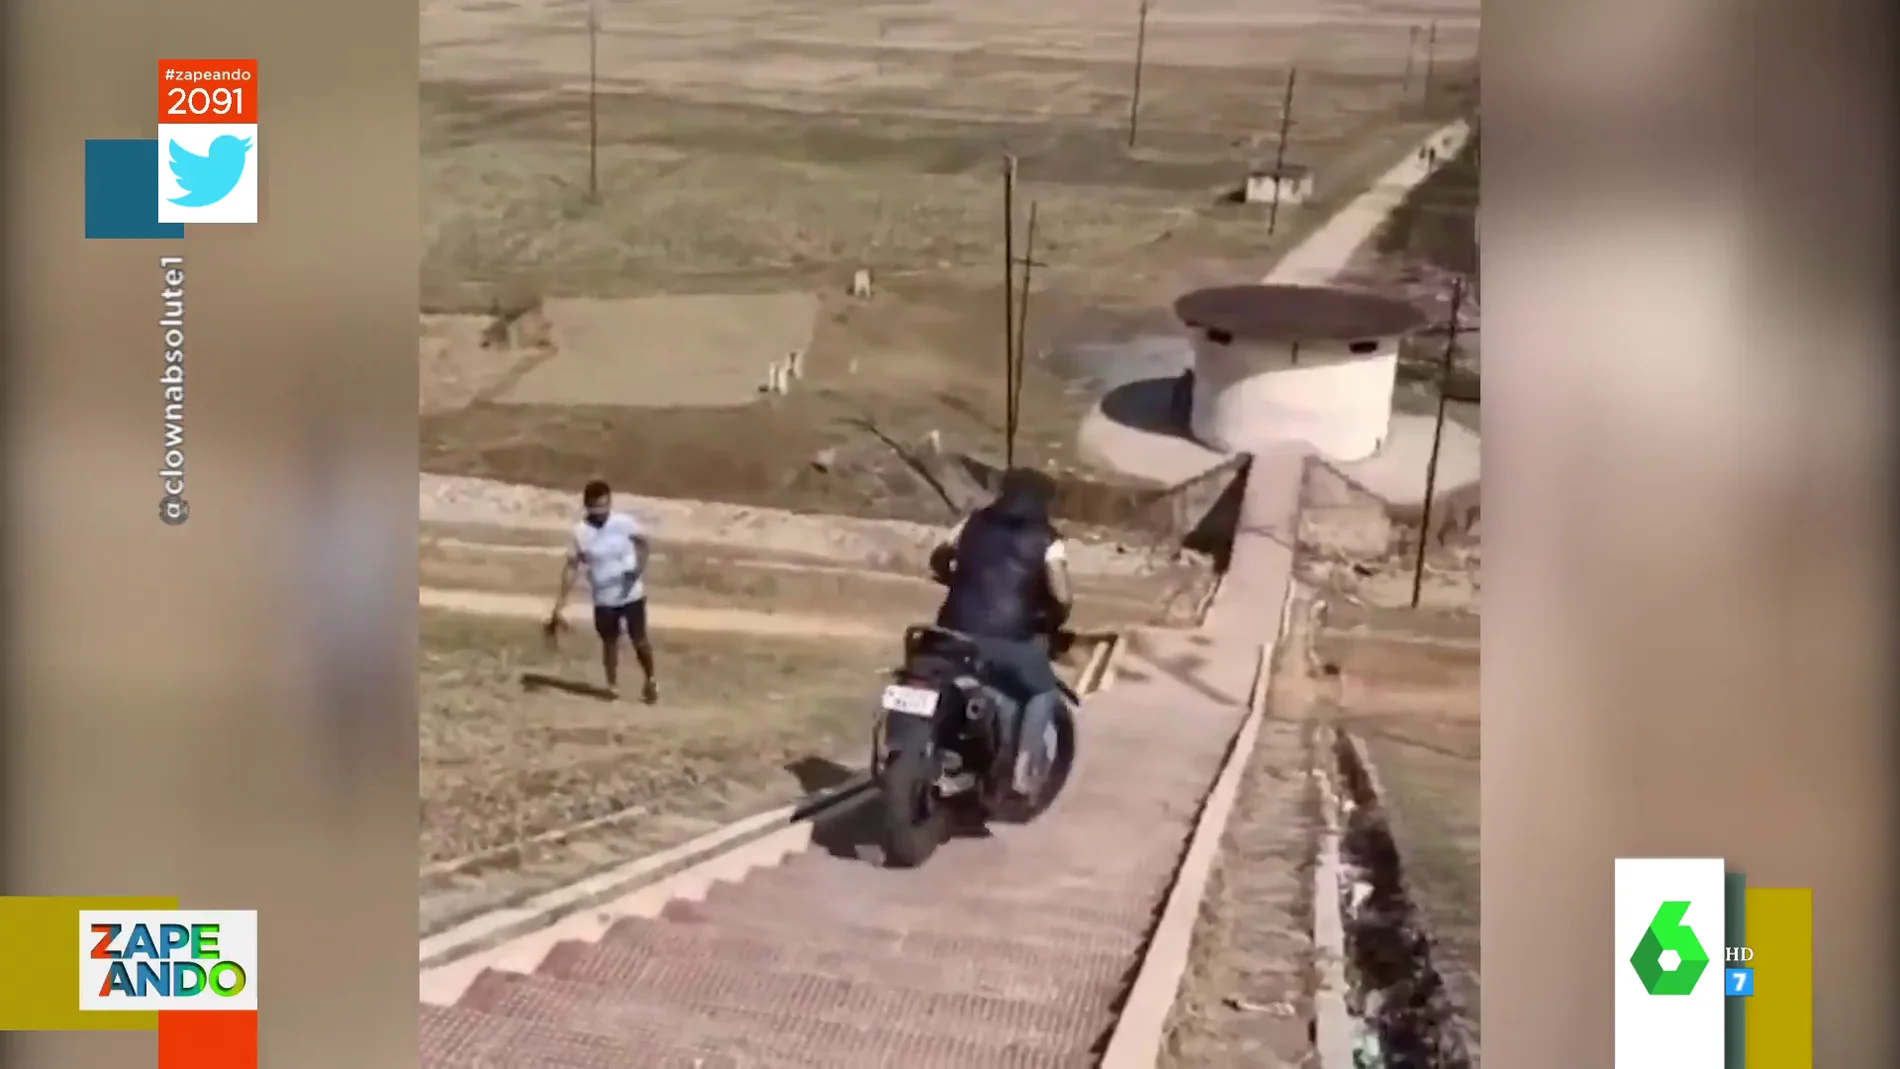 El 'cómico' accidente de un hombre tras bajar unas escaleras con su moto: "La gente hace cosas muy locas para presumir" 